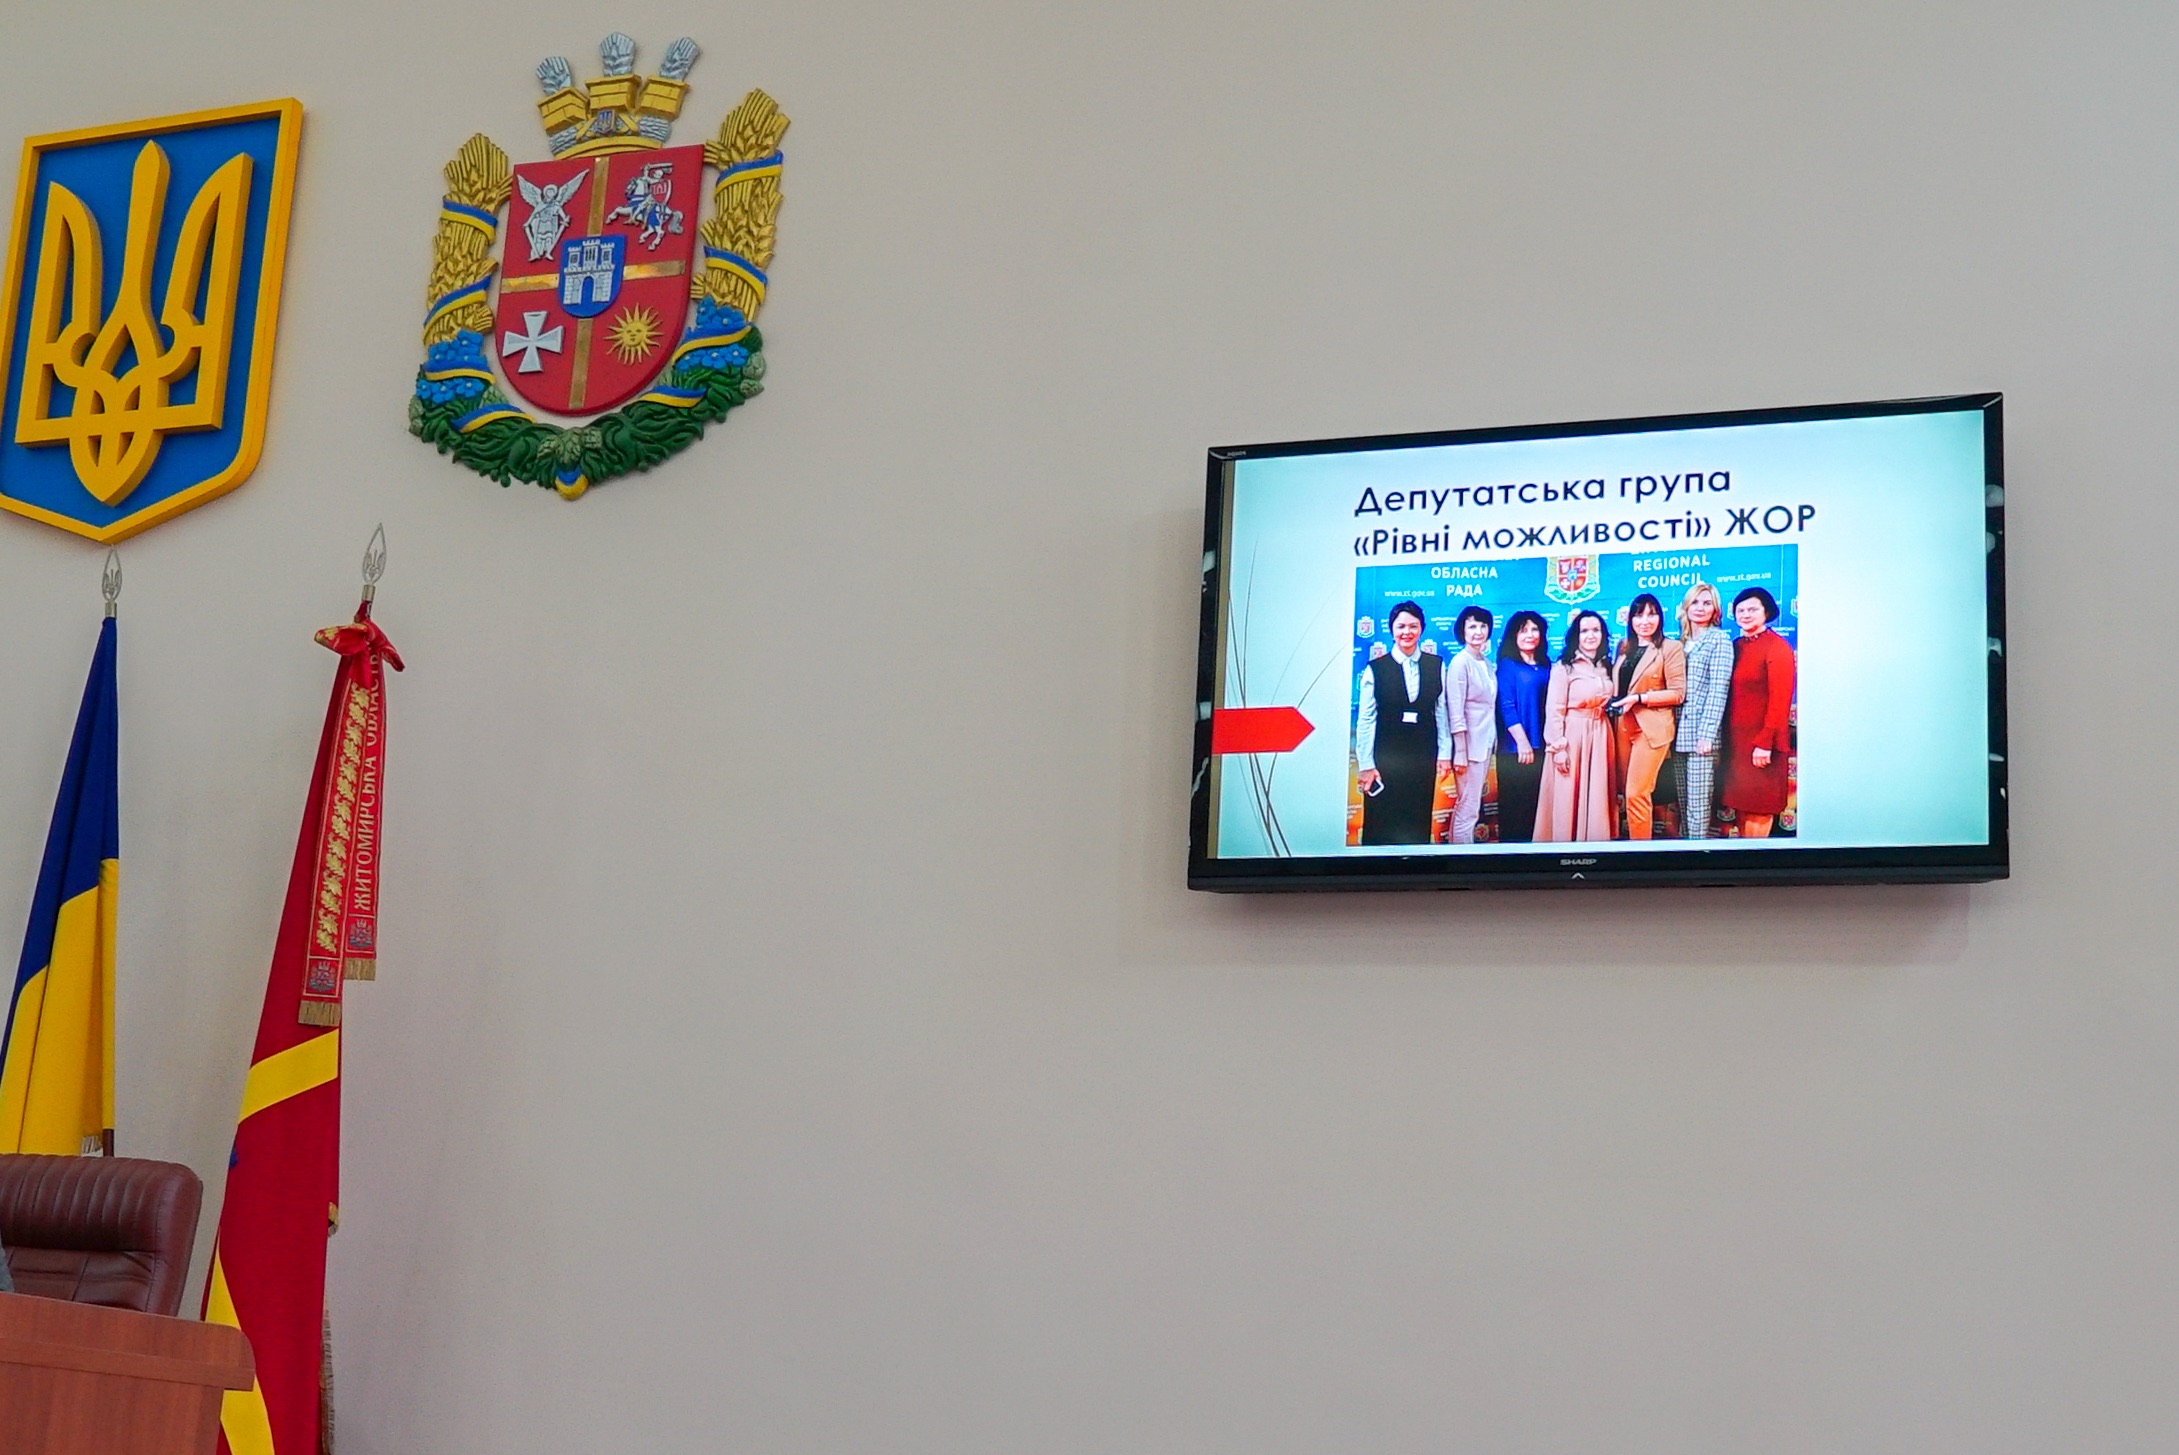 Людмила Кицак виступила на сесії облради зі звітом про робочий візит депутатської групи "Рівні можливості" до Любліна